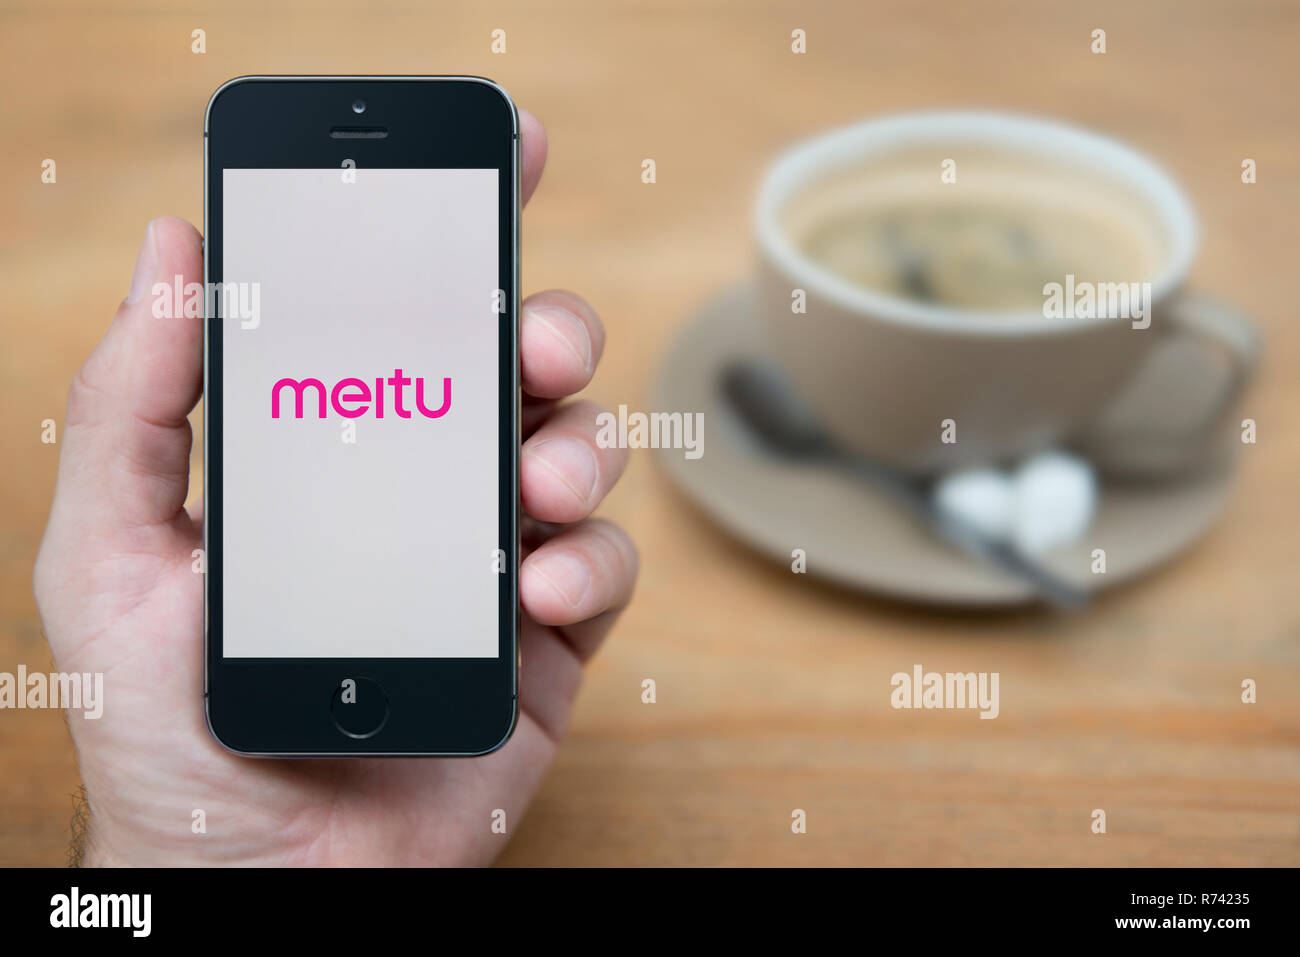 Un homme se penche sur son iPhone qui affiche le logo Meitu (usage éditorial uniquement). Banque D'Images